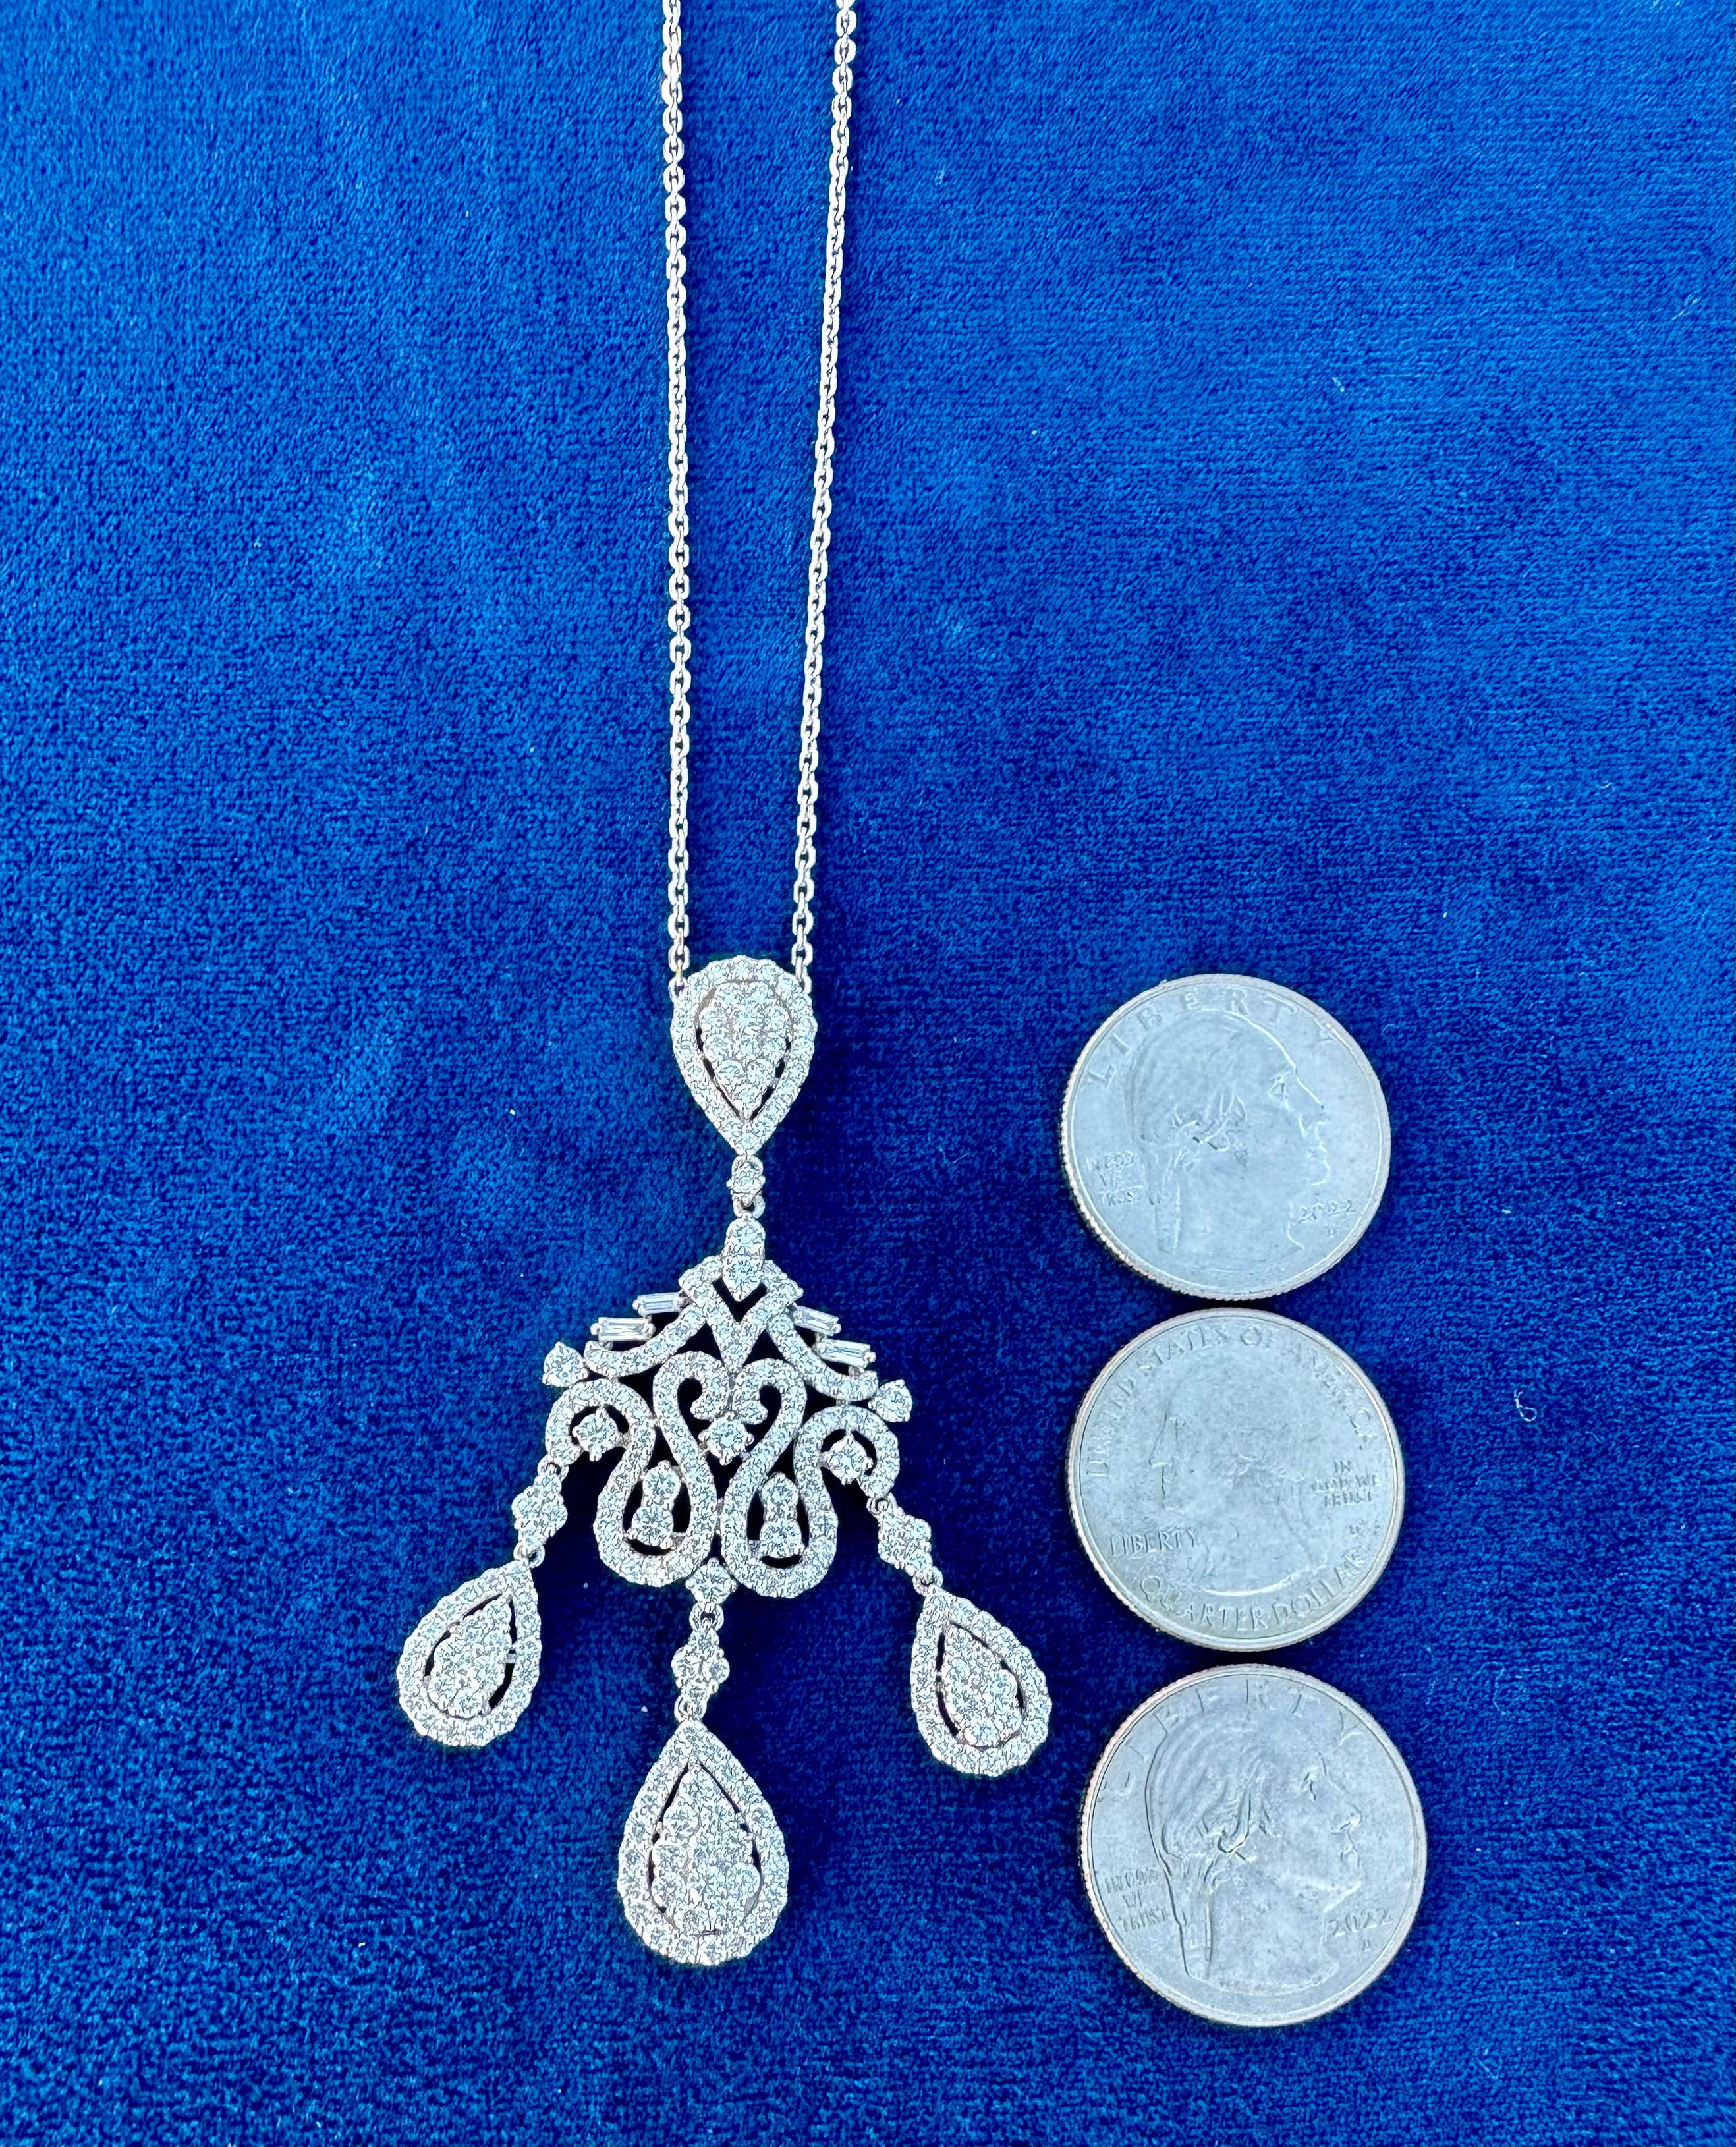 Exquisite 18 Karat White Gold 9.76 Carat Diamond Chandelier Pendant Necklace  For Sale 1